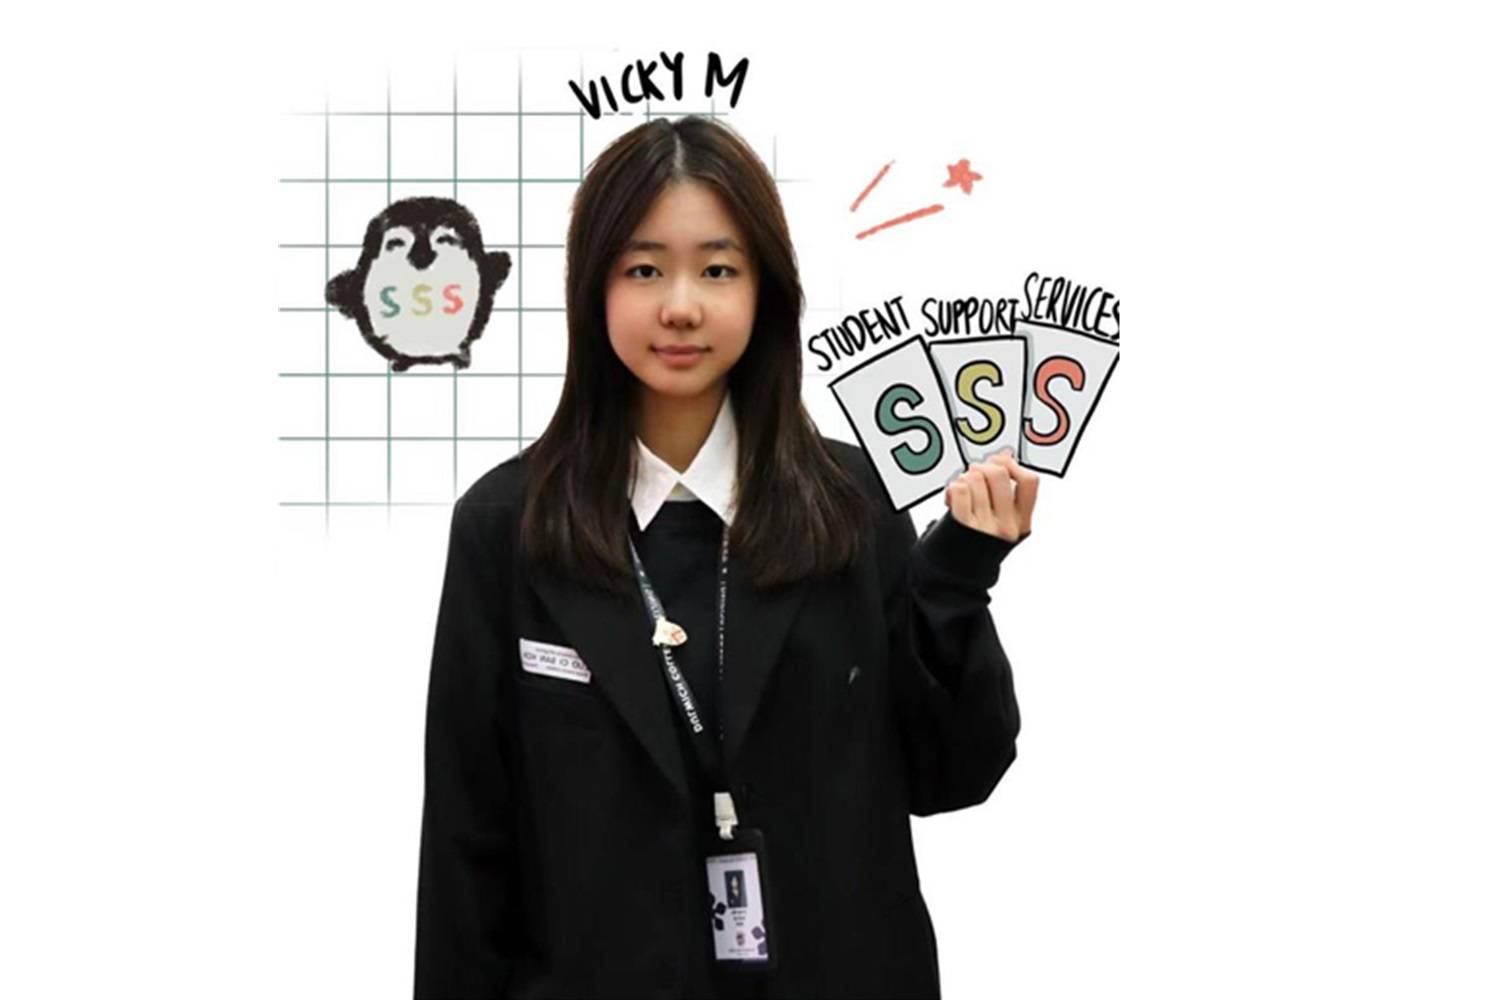 学生支持服务学生代表：Vicky M